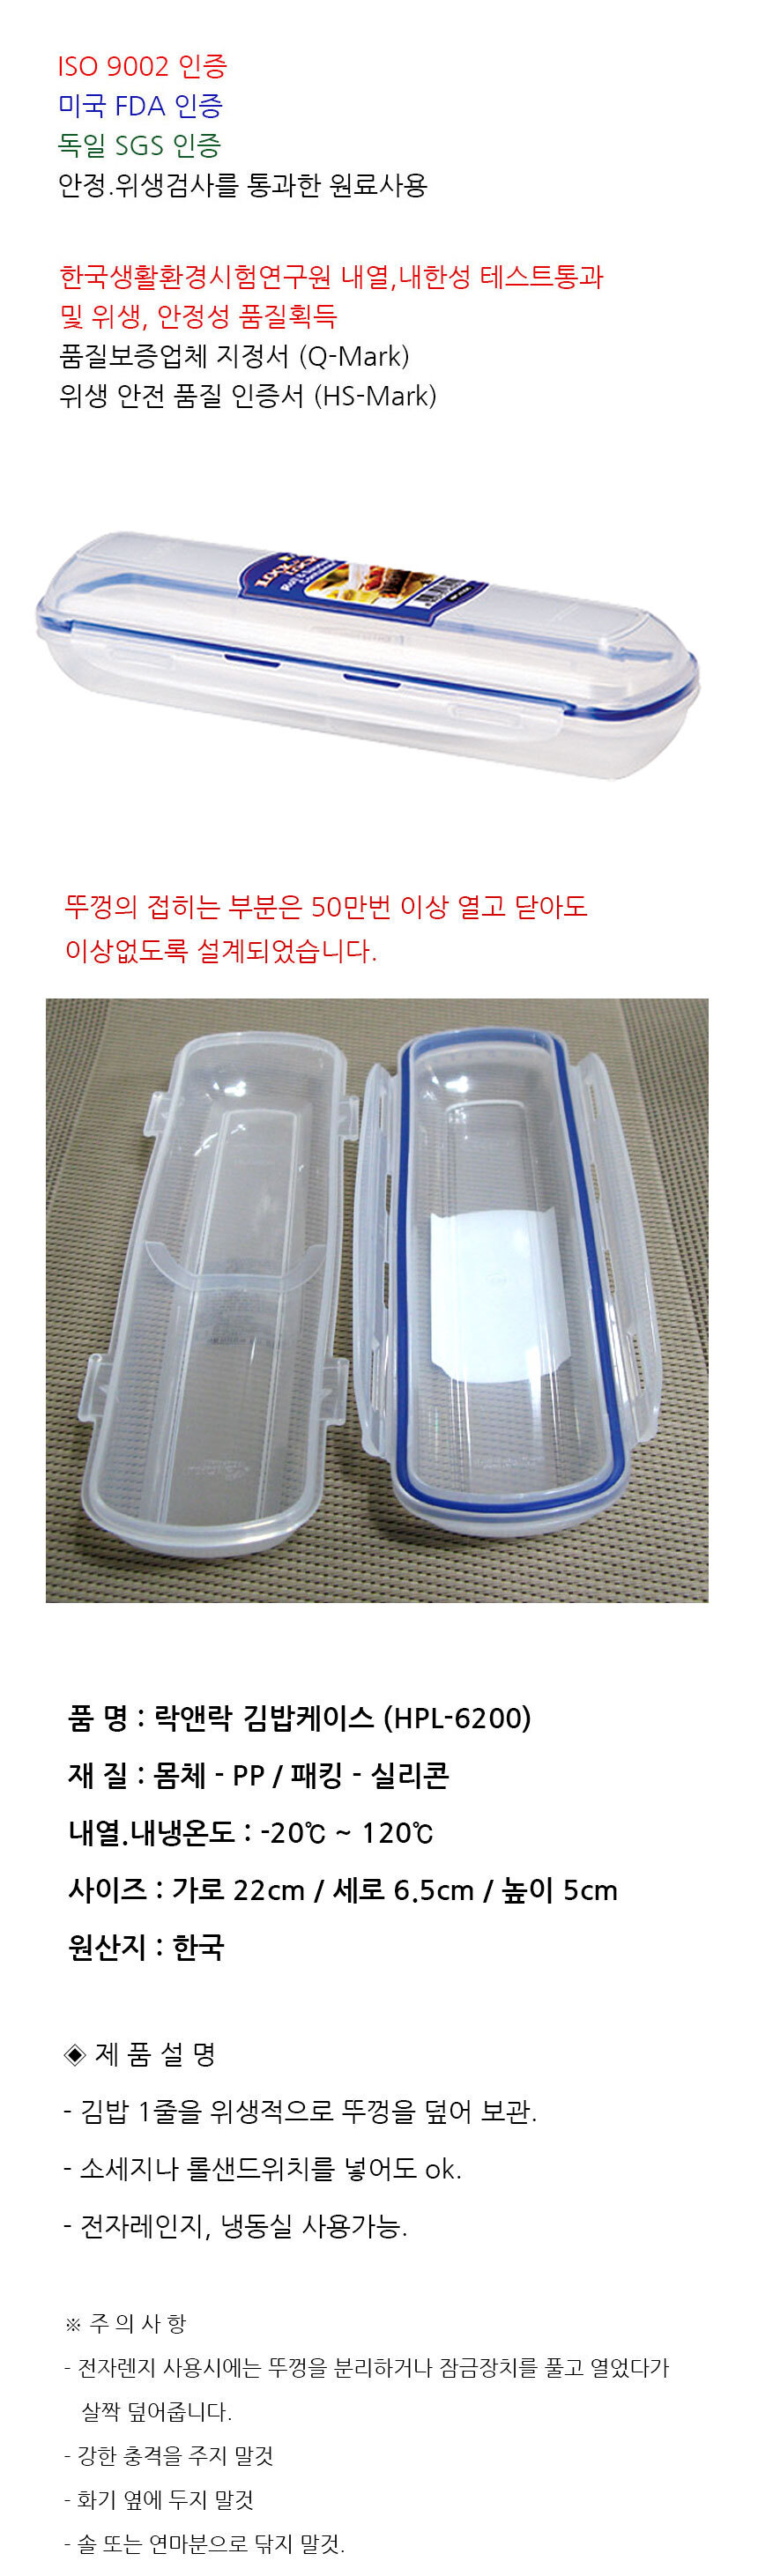 락앤락 김밥 케이스 보관통 도시락 휴대용 보관용기 - 모듬키친